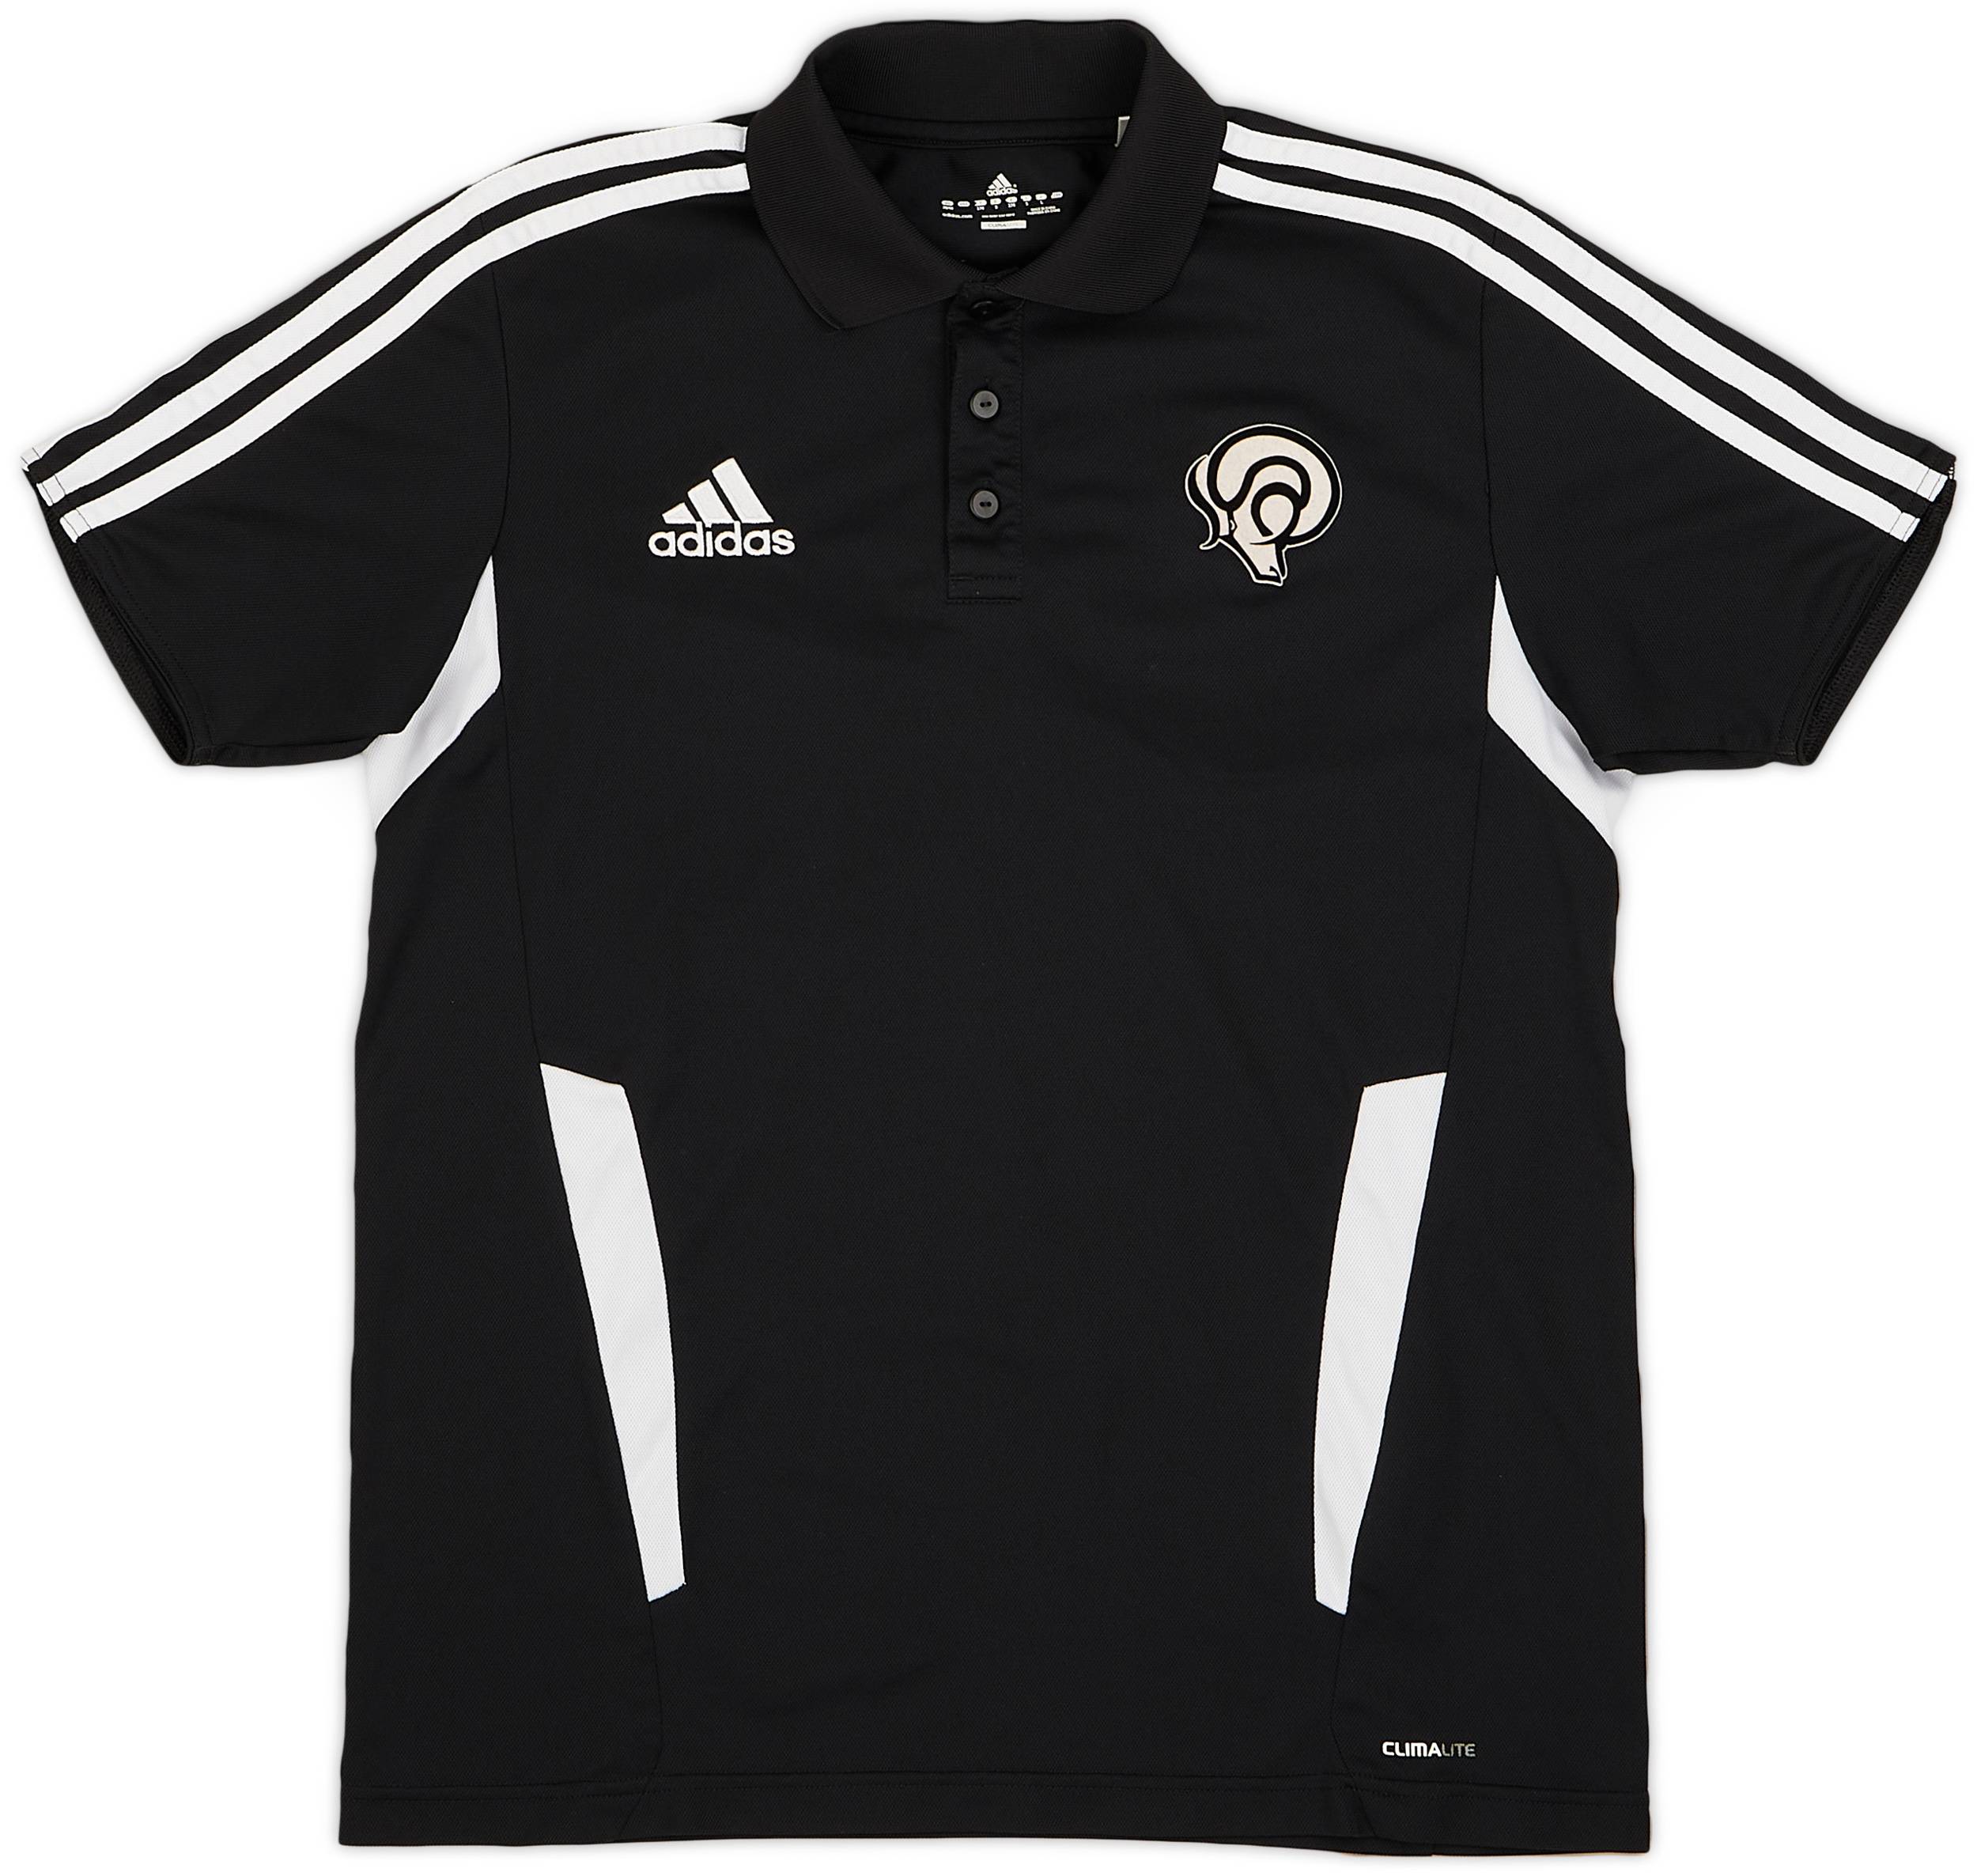 2011-12 Derby County adidas Polo Shirt - 8/10 - (M)